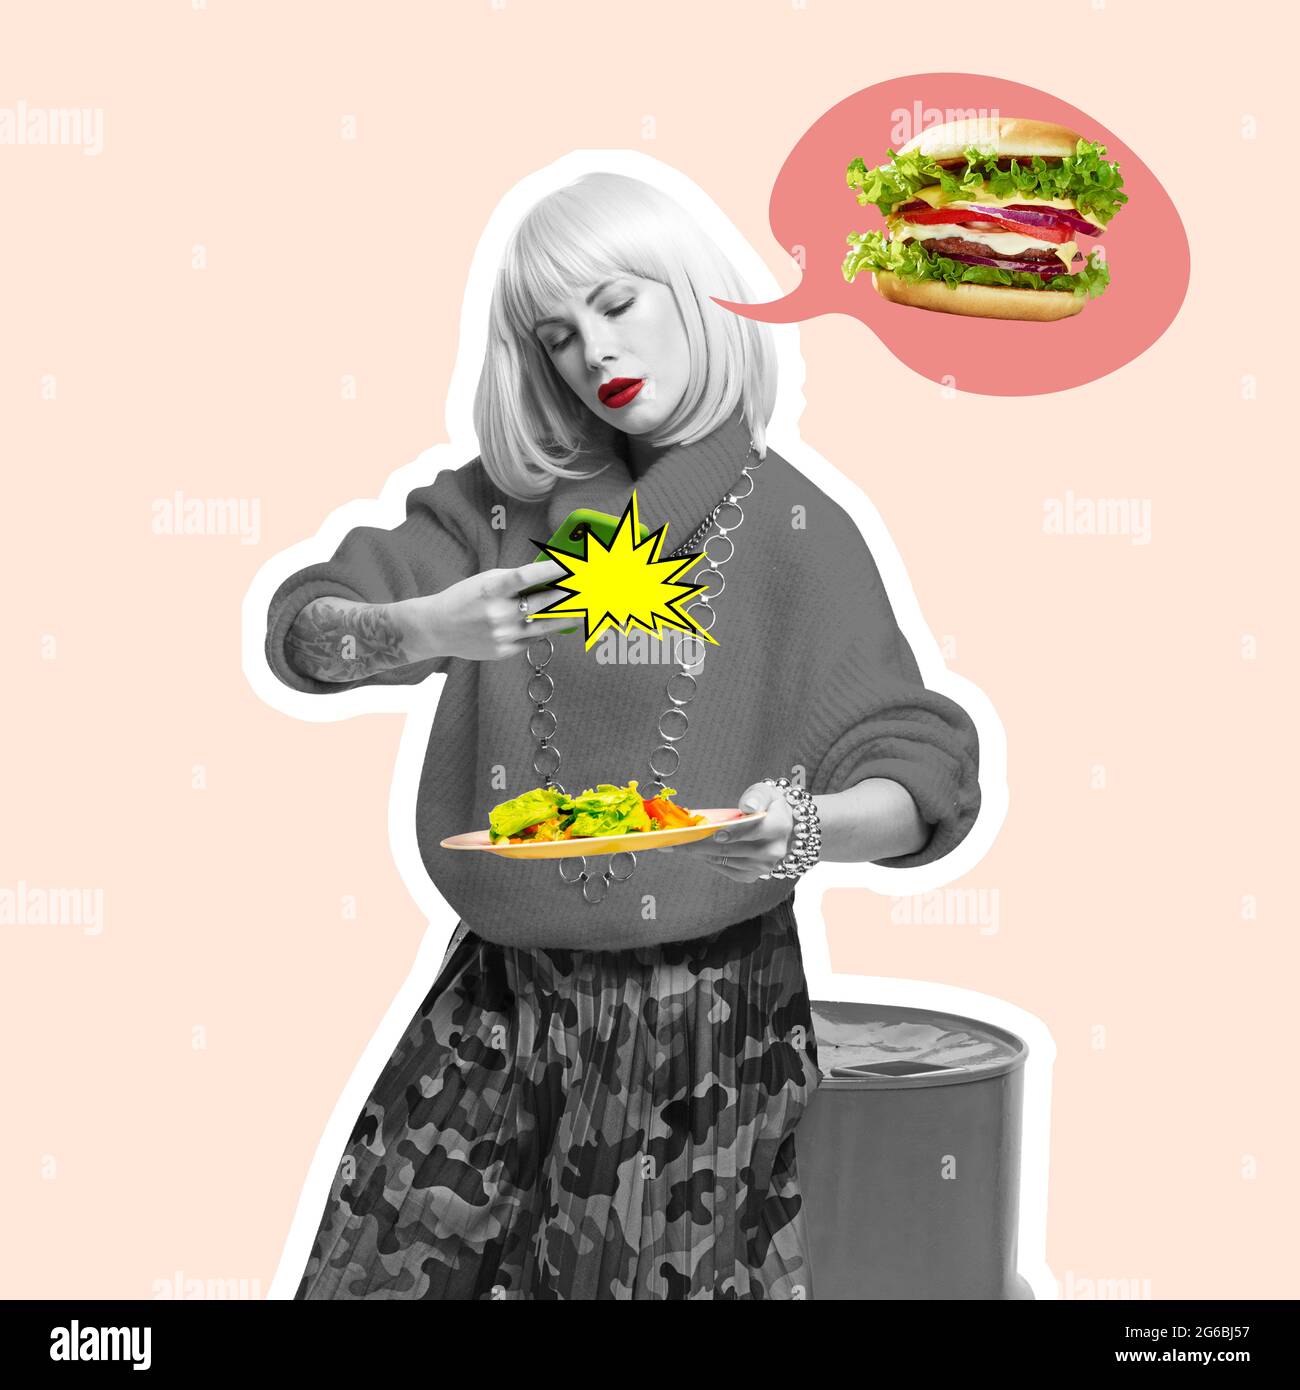 Jeune femme, blogueur de nourriture photographie de la nourriture isolée sur fond clair. Collage d'art contemporain et design moderne. Concept d'idée, inspiration Banque D'Images